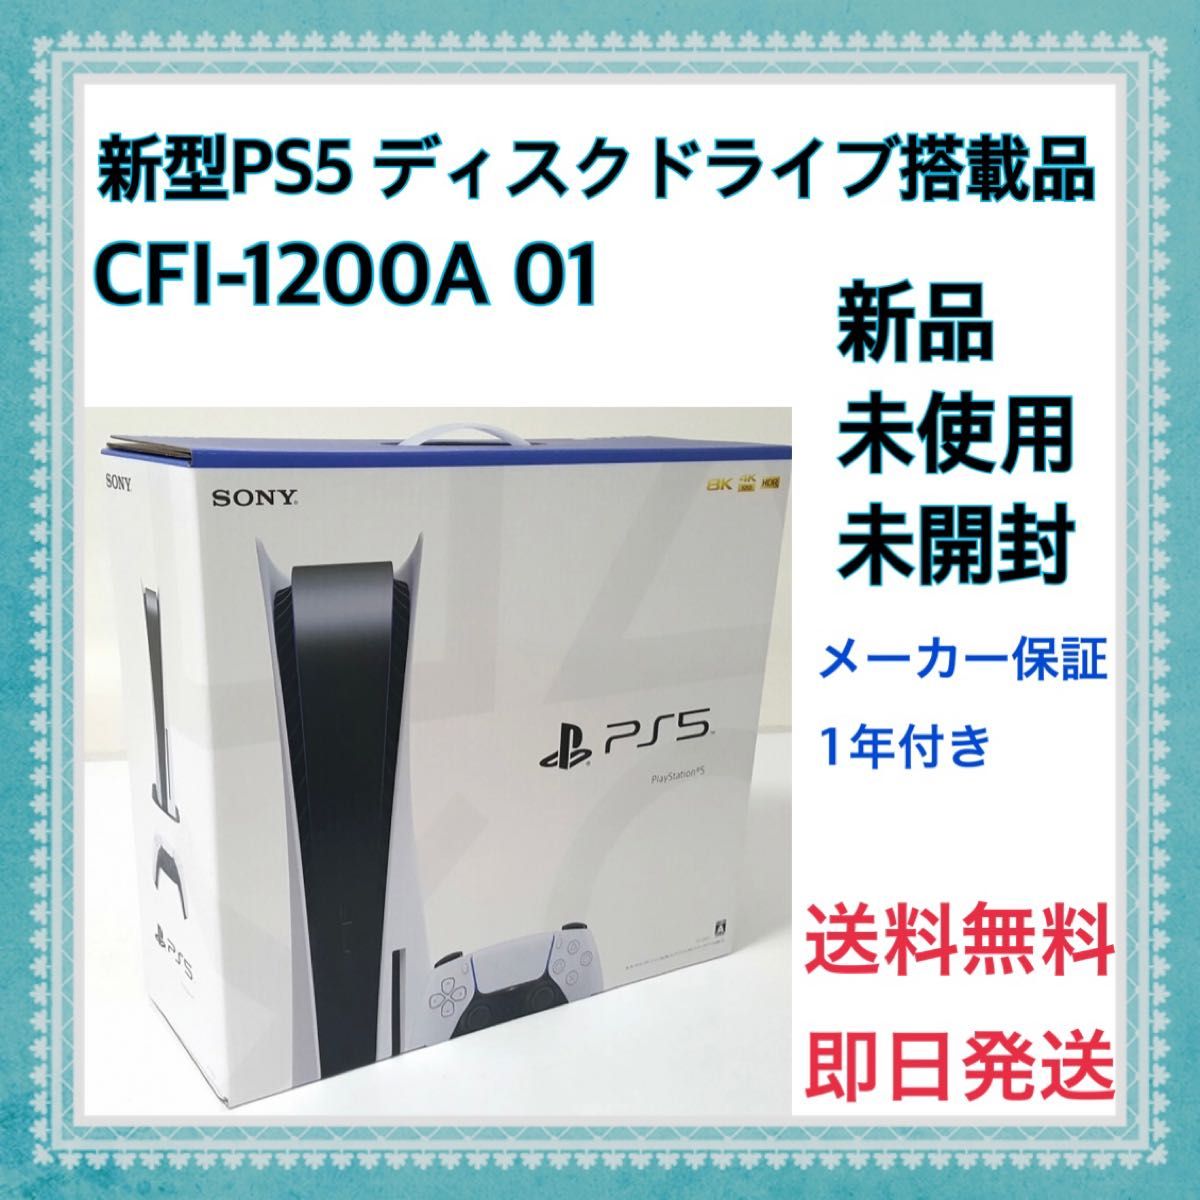 プレイステーション5 PS5 本体 CFI-1200A01新品未使用未開封 